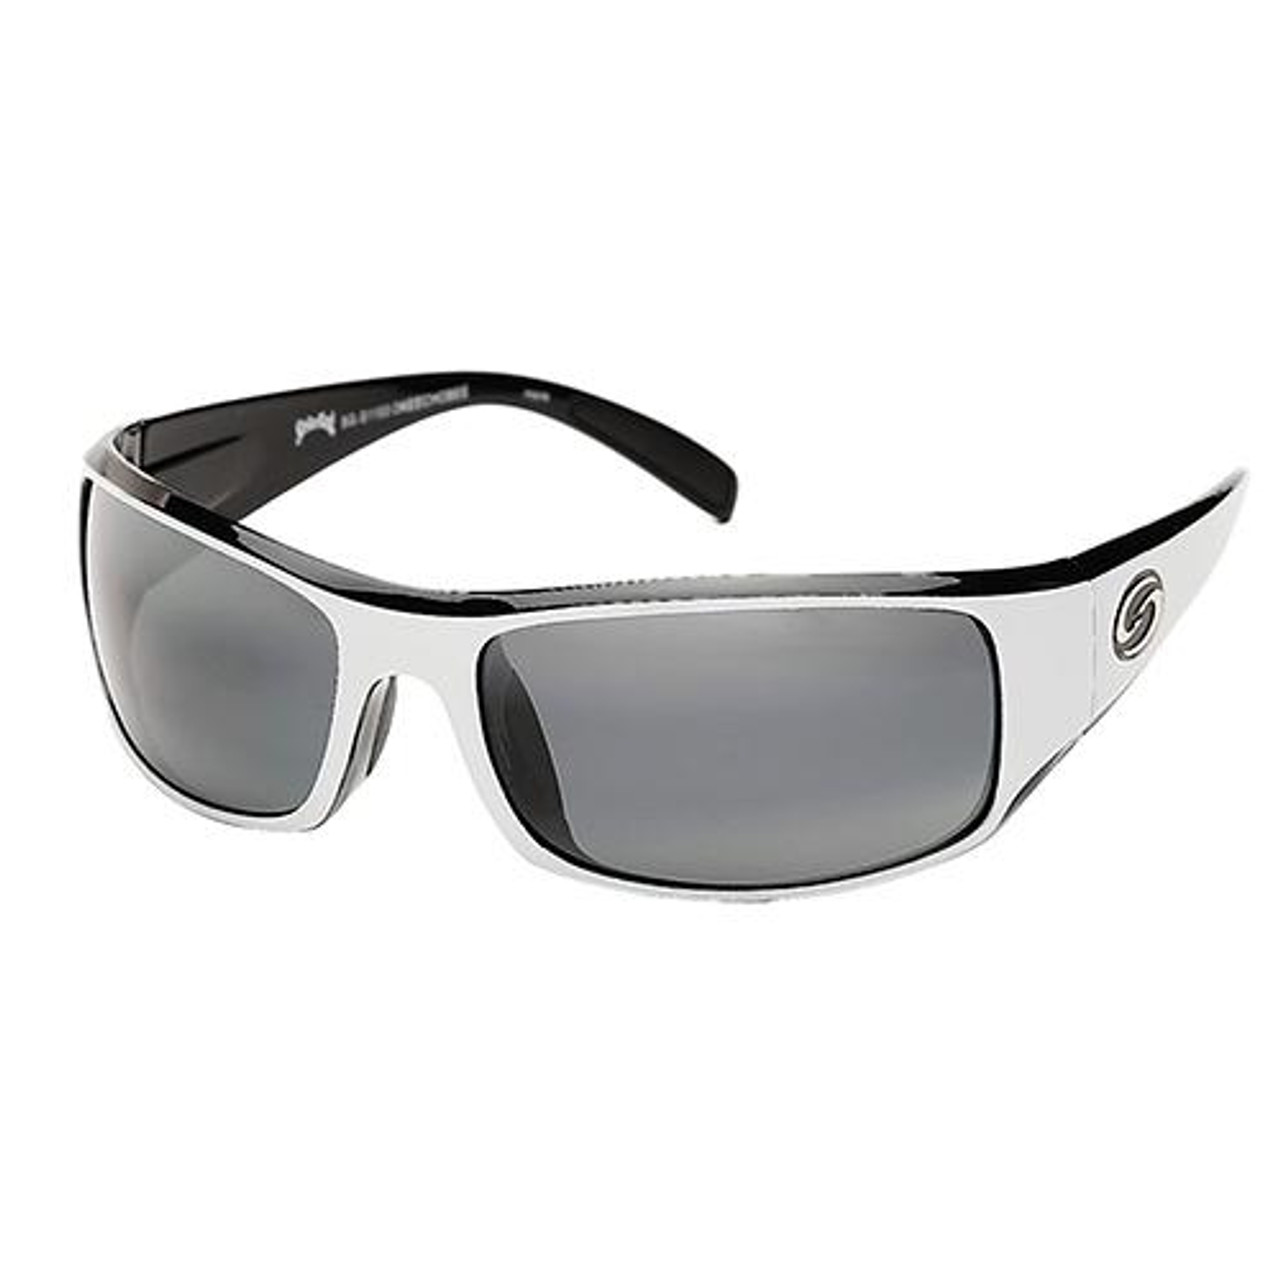 Strike King Lures S11 Optics Sunglasses Okeechobee Style, Rubberized Matte  Gray Frame, Gray Lens